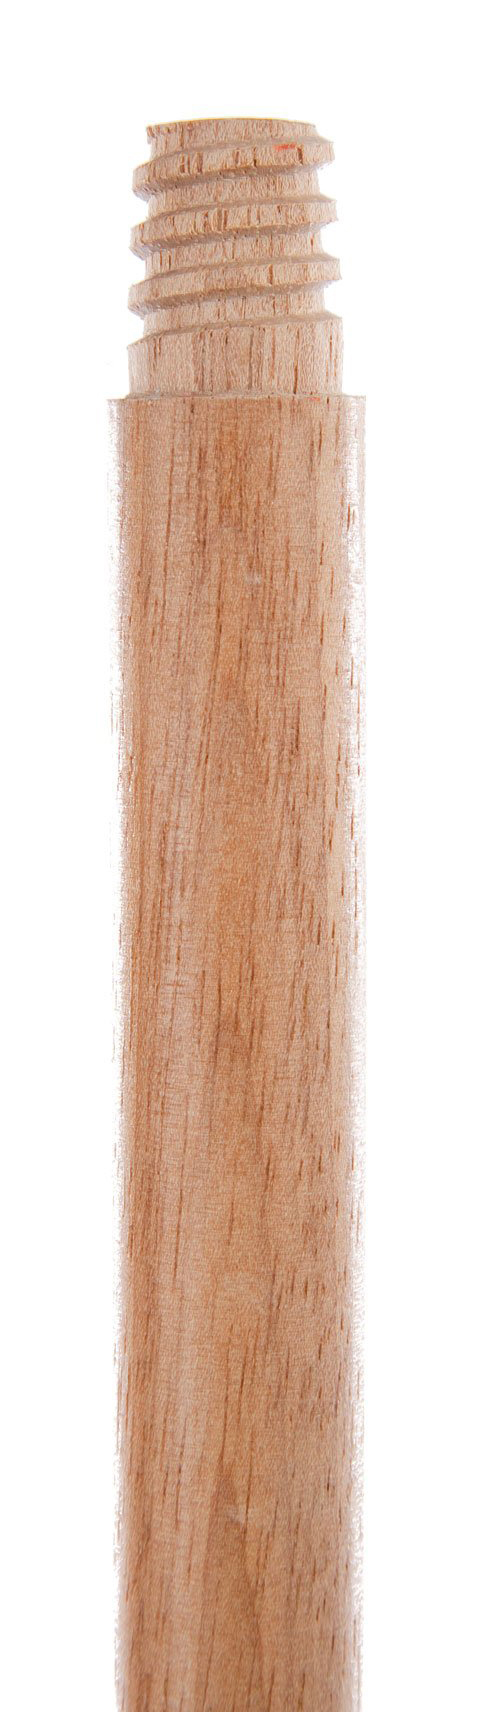 60"x15/16" Atlas Graham® Threaded Wooden Mop/Broom Handle, Hardwood